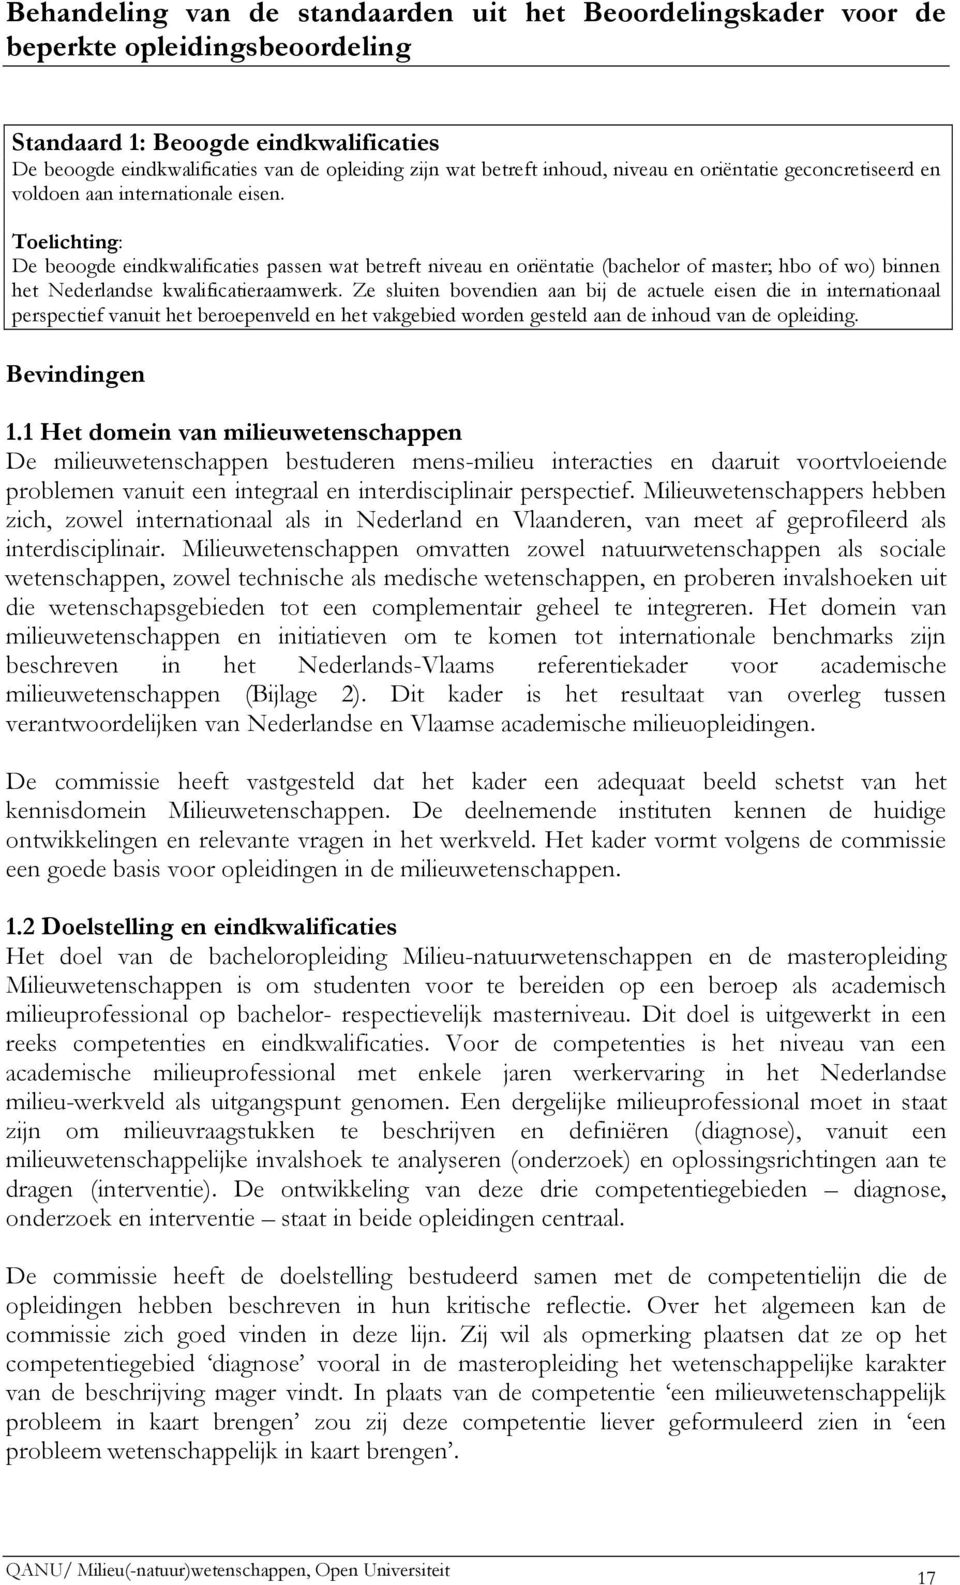 Toelichting: De beoogde eindkwalificaties passen wat betreft niveau en oriëntatie (bachelor of master; hbo of wo) binnen het Nederlandse kwalificatieraamwerk.